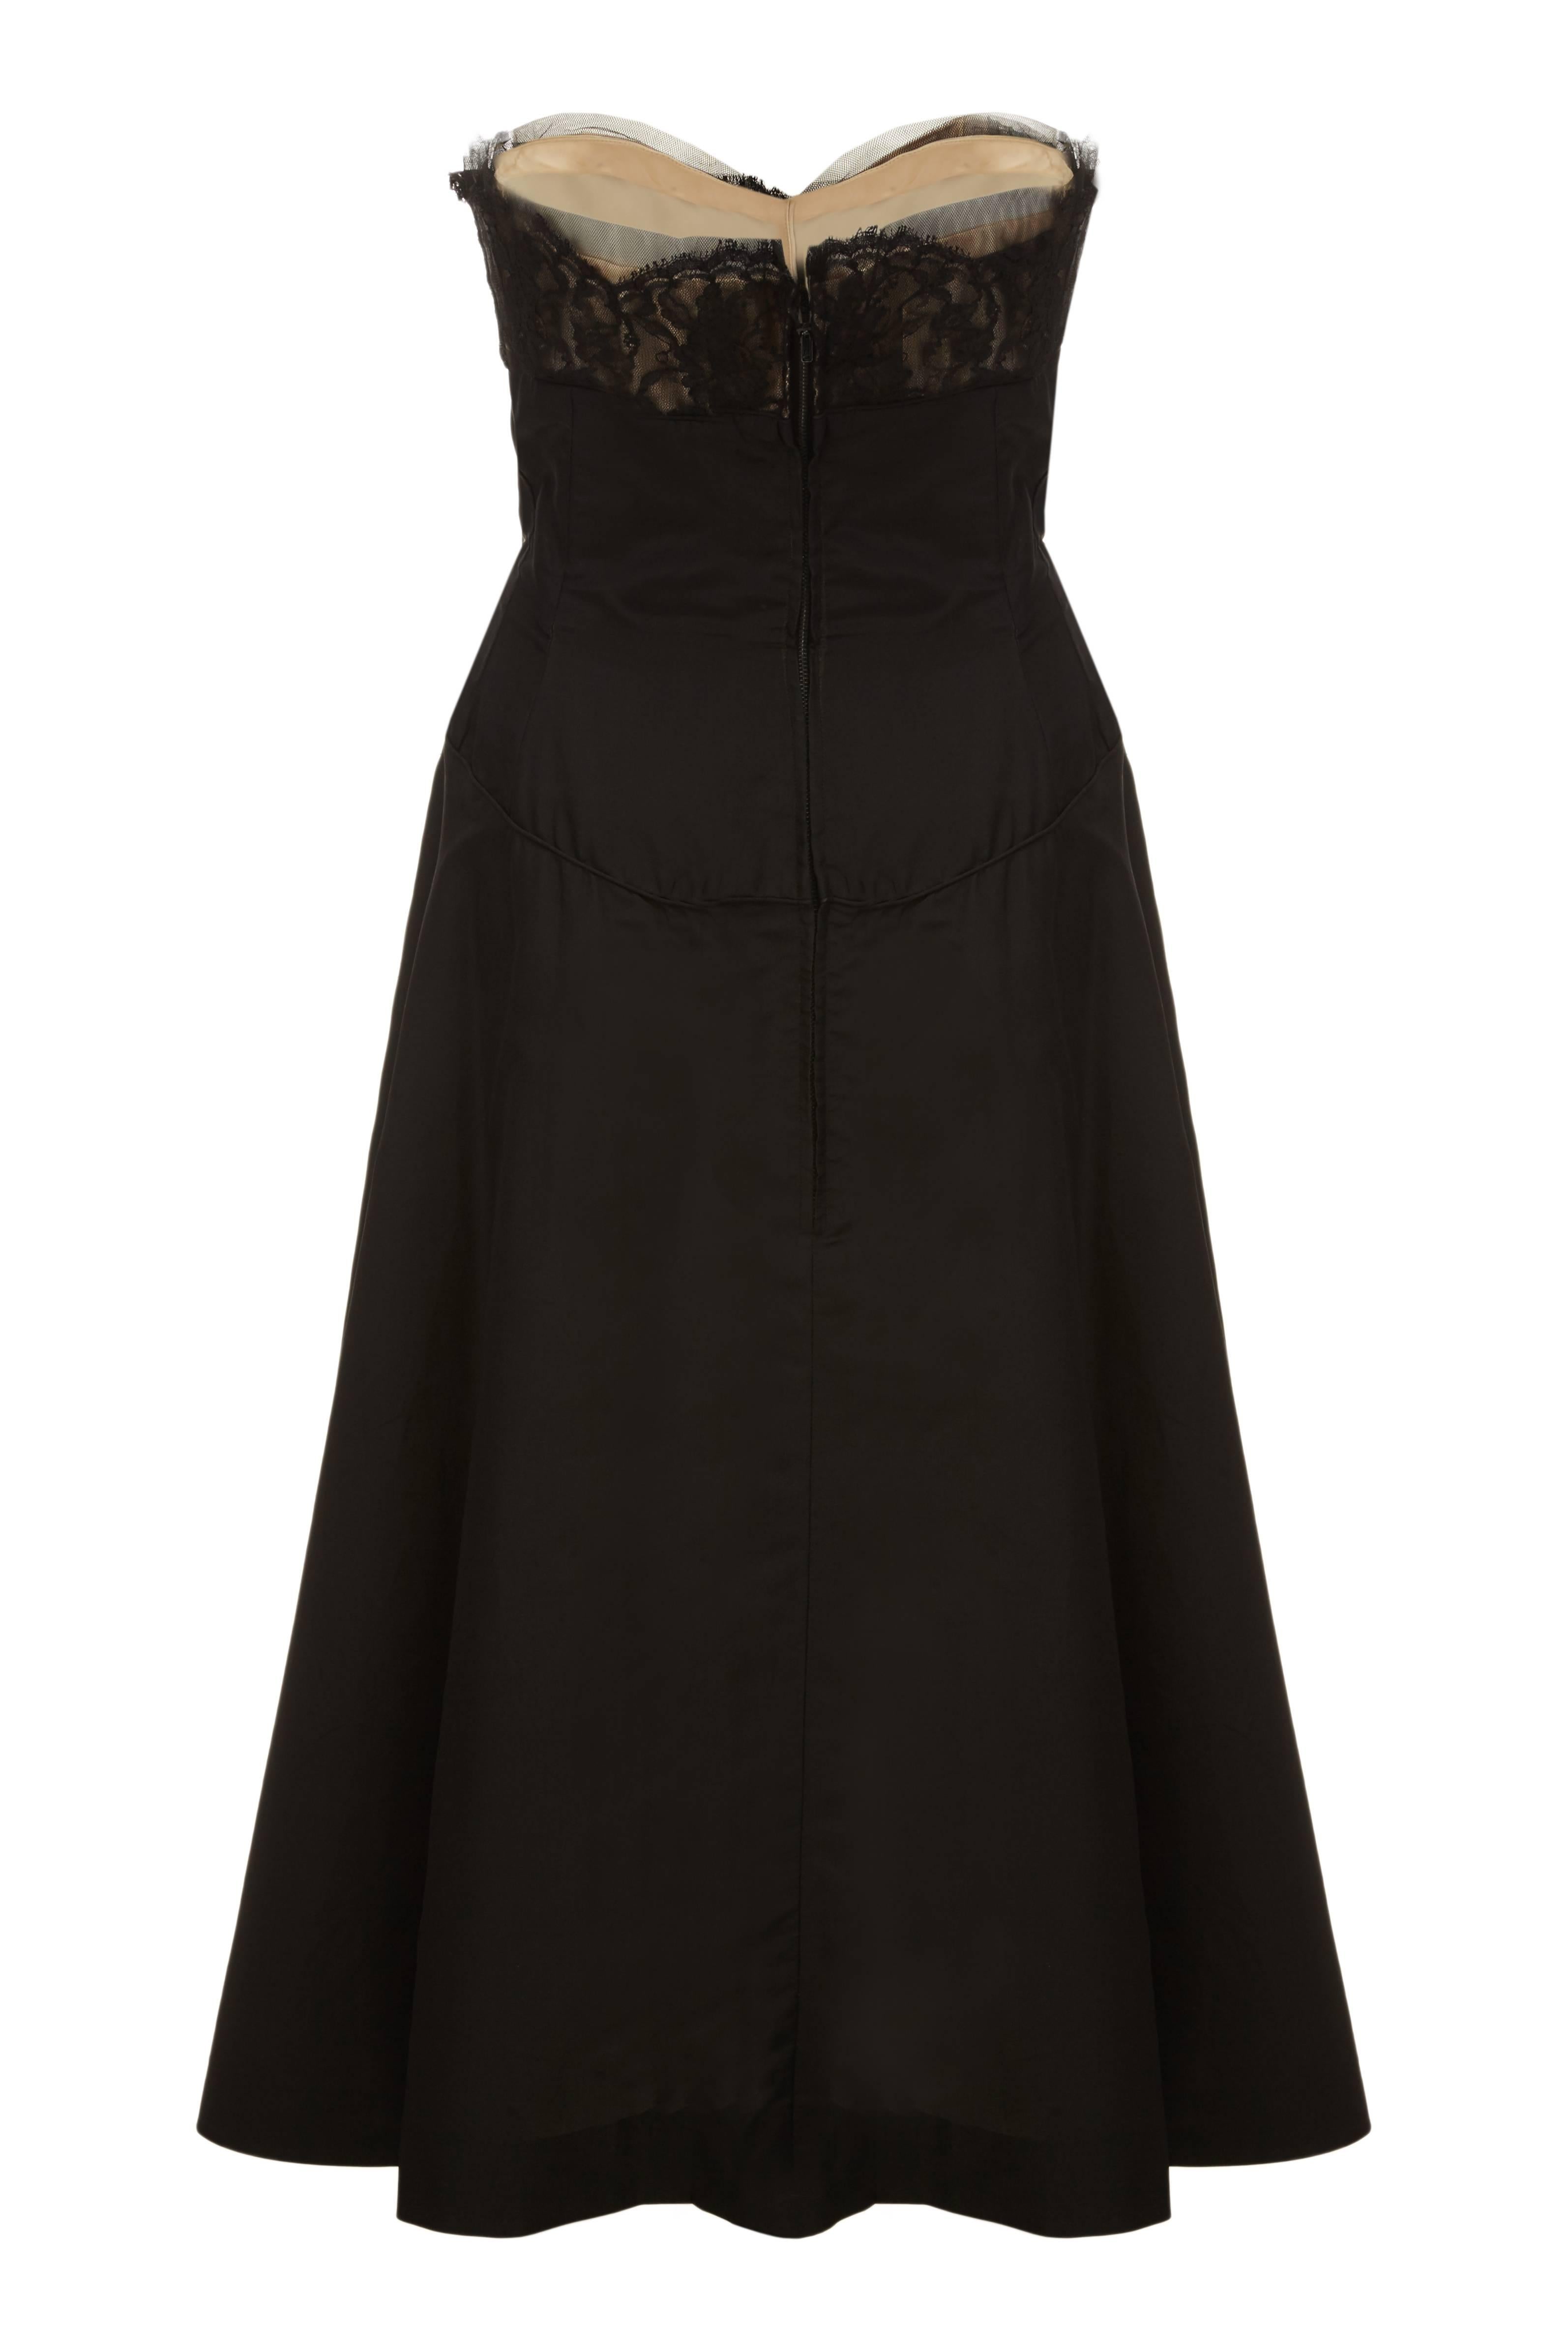 Dieses verführerische schwarze Seidensatin-Cocktailkleid aus den 1950er Jahren ist von hervorragender Qualität und Konstruktion und in hervorragendem Vintage-Zustand. Das Kleid hat einen herzförmigen Ausschnitt aus weichem, schwarzem Netzstoff mit